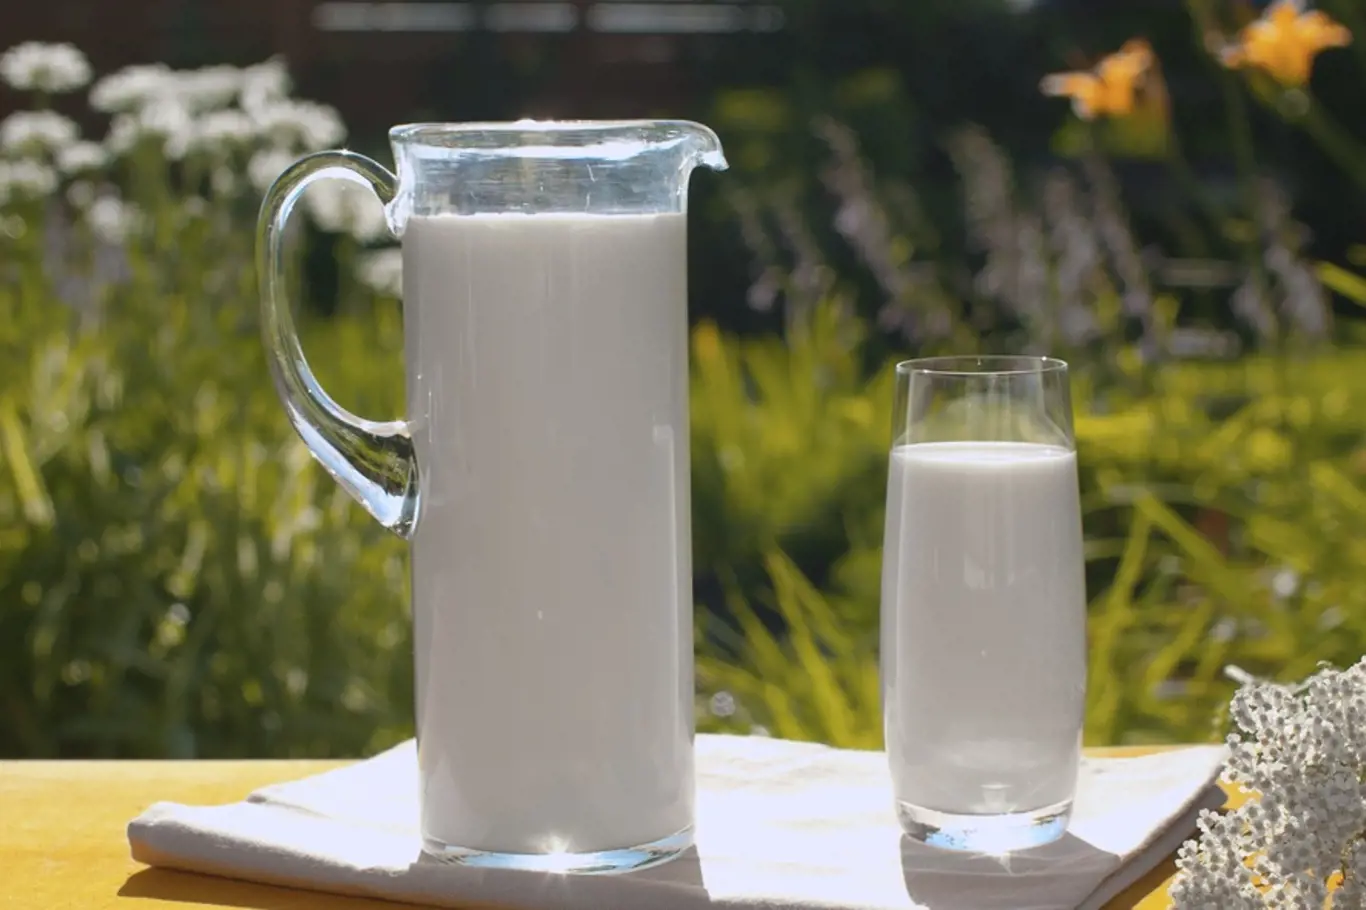 Mléko může dokonce posloužit jako ochranný prostředek proti patogenním mikroorganismům, mnoha škůdcům a obtížnému hmyzu.